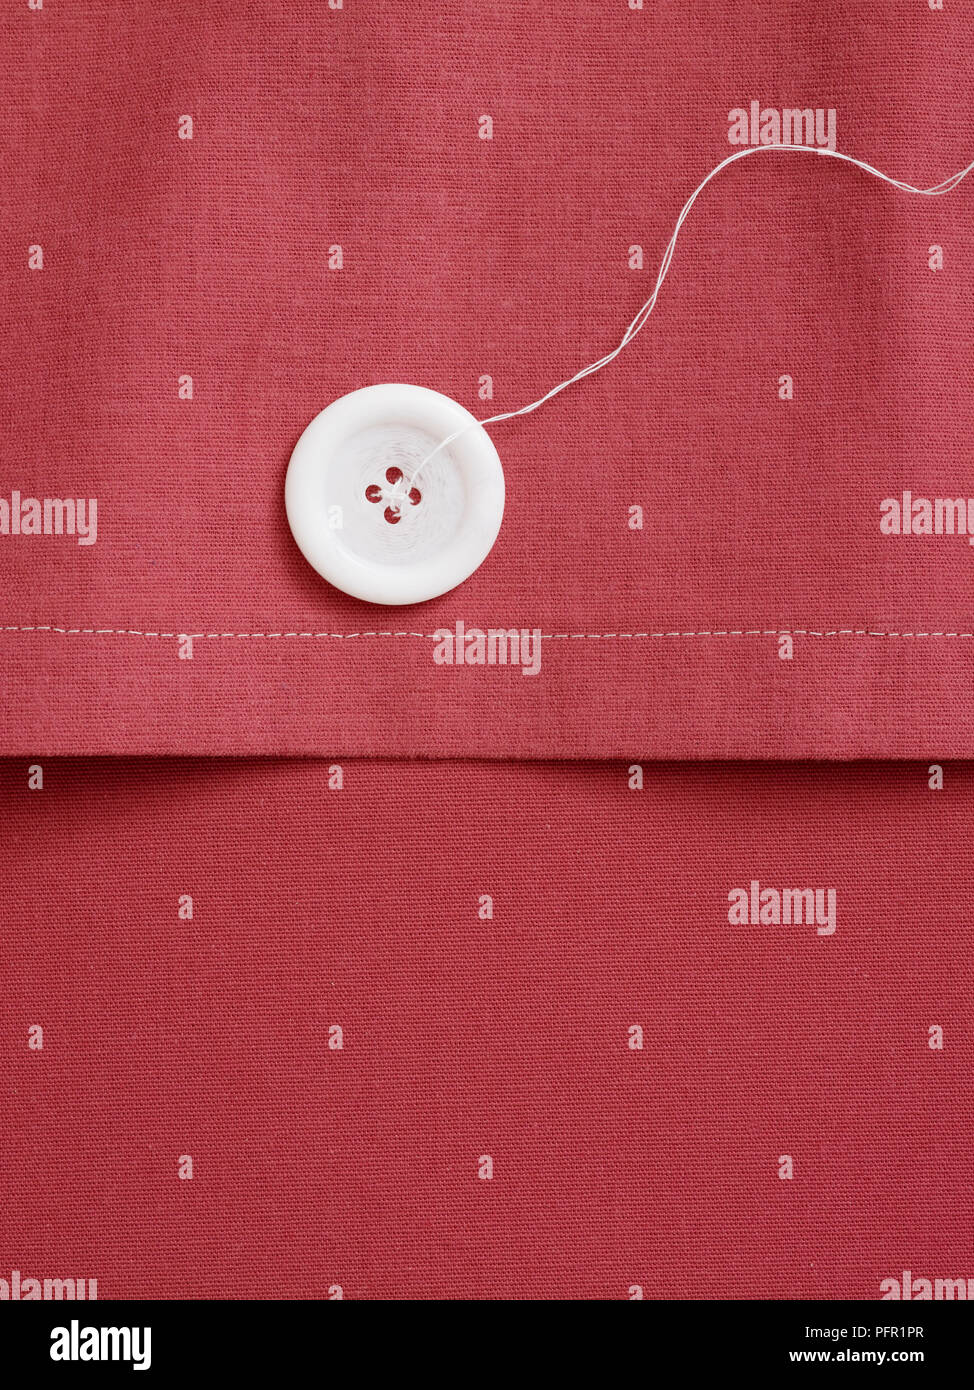 Weißen Knopf und Baumwollfaden auf Rosa Bett Polsterbezüge, close-up Stockfoto